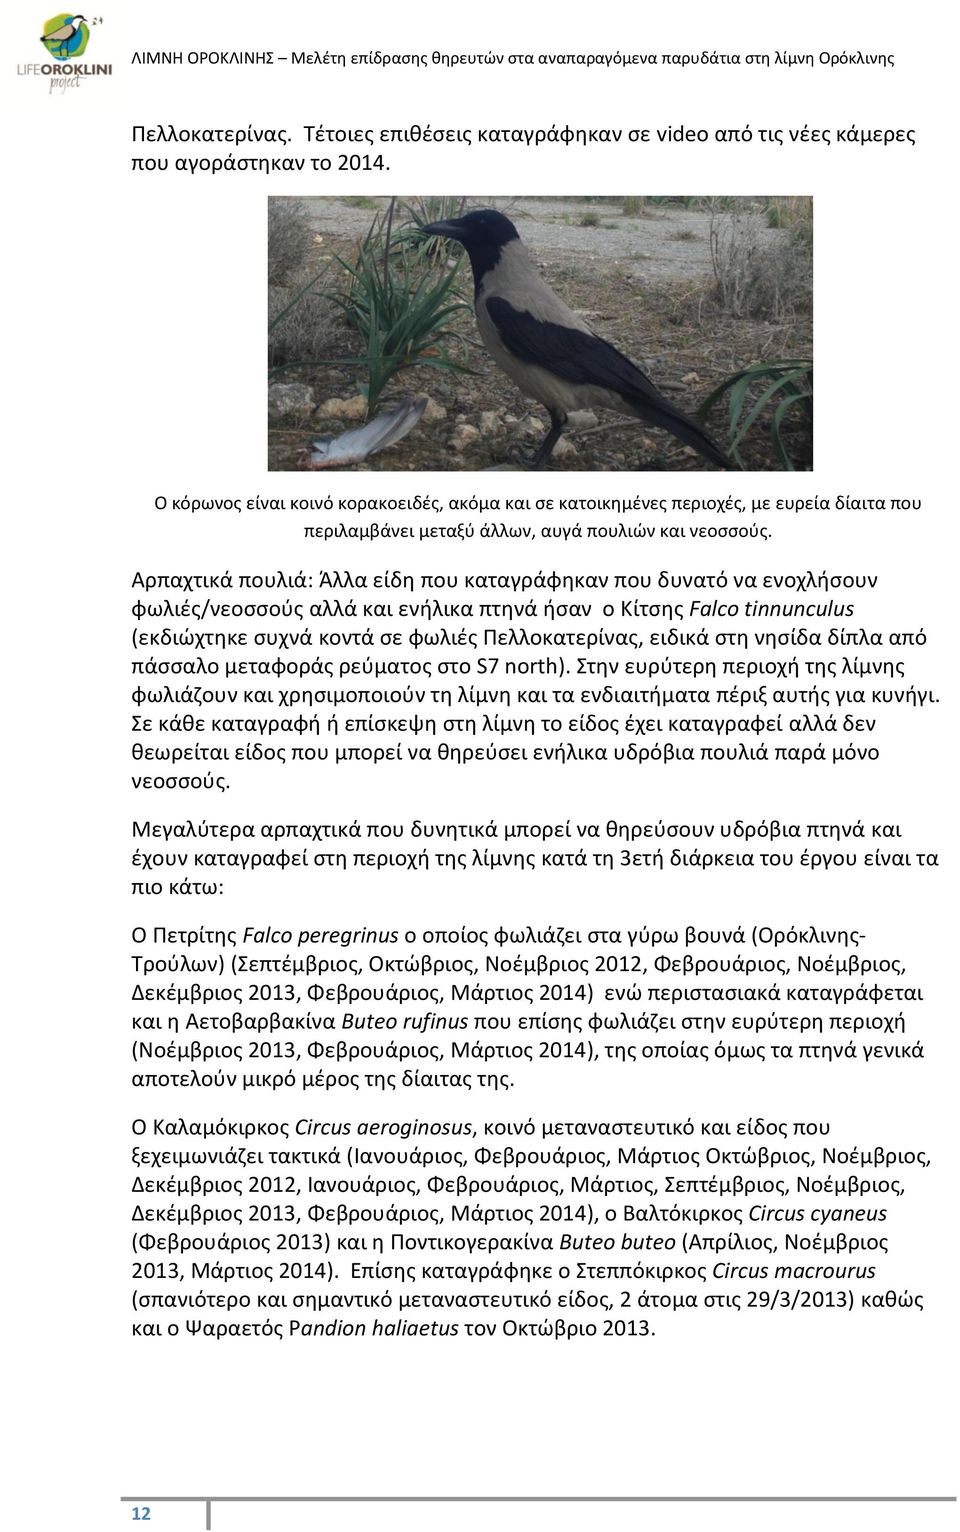 Αρπαχτικά πουλιά: Άλλα είδη που καταγράφηκαν που δυνατό να ενοχλήσουν φωλιές/νεοσσούς αλλά και ενήλικα πτηνά ήσαν ο Κίτσης Falco tinnunculus (εκδιώχτηκε συχνά κοντά σε φωλιές Πελλοκατερίνας, ειδικά